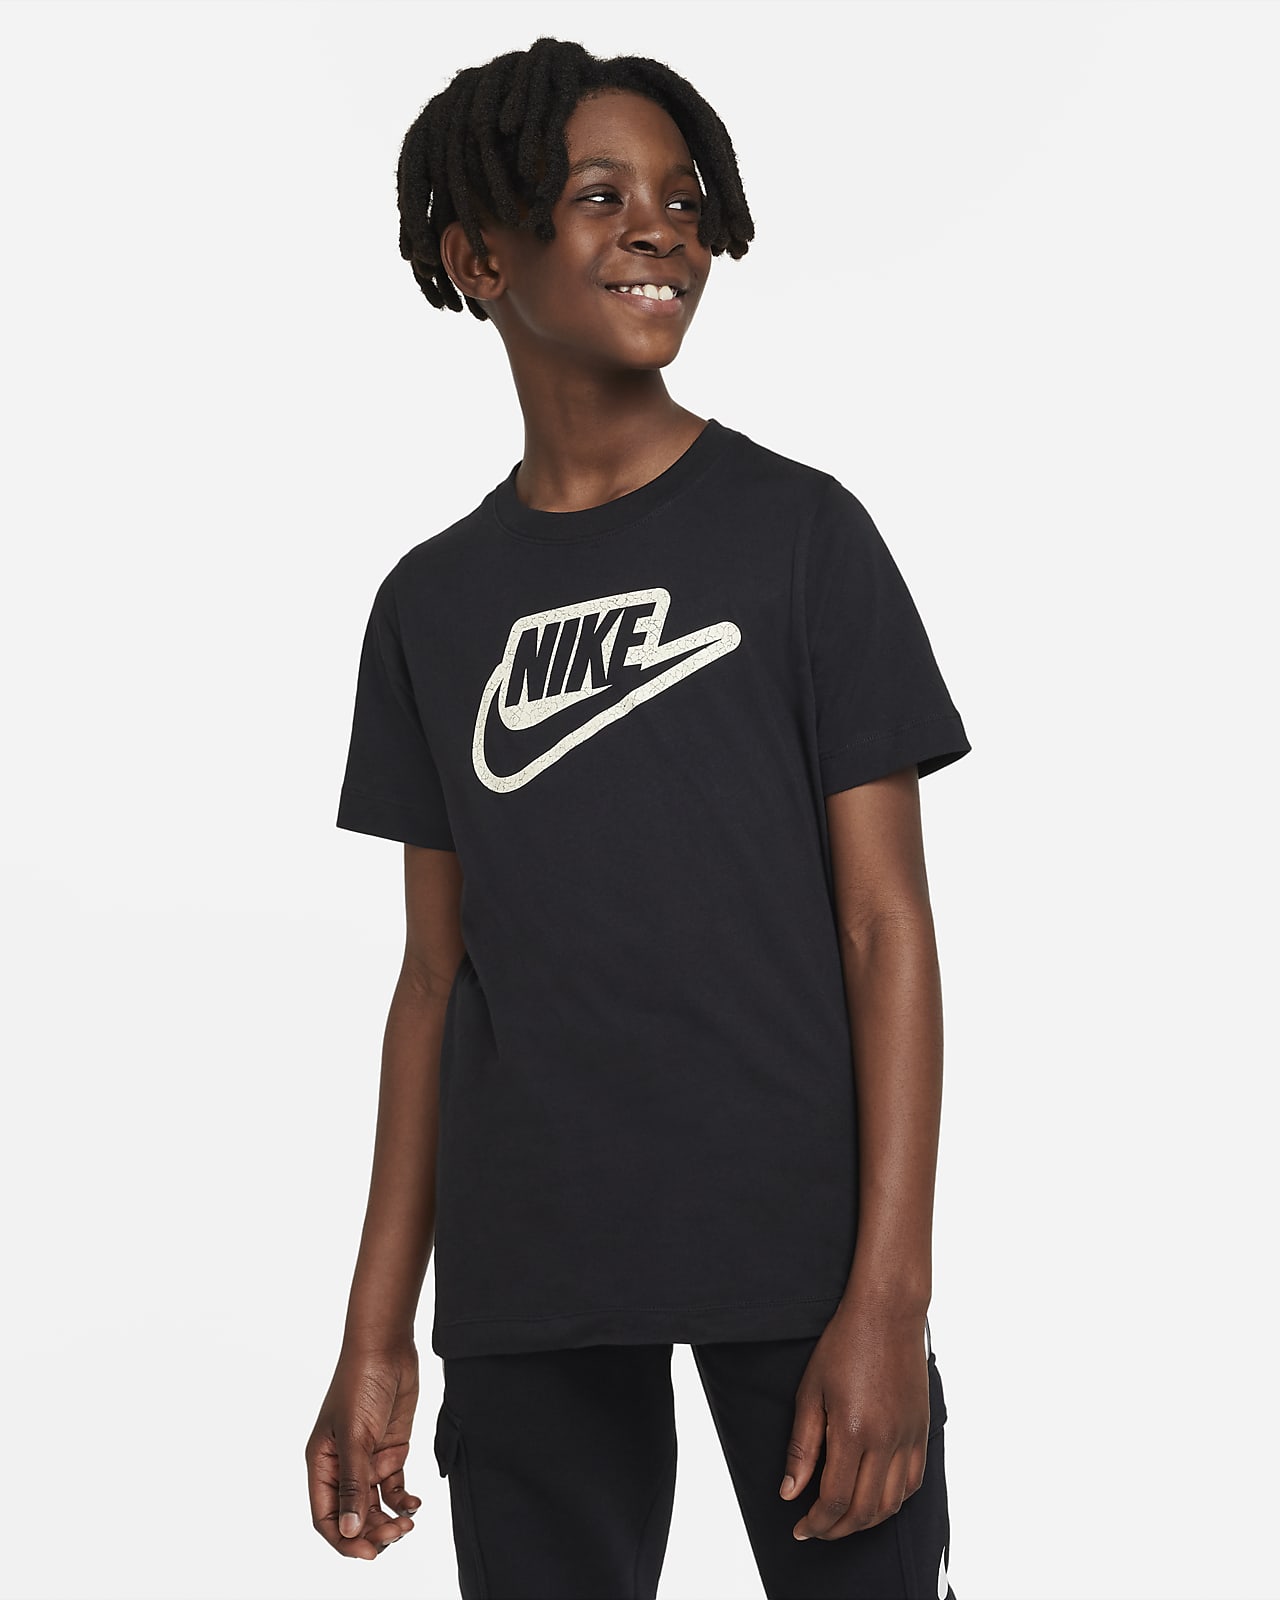 Nike Sportswear Older Kids' T-Shirt. Nike Vn